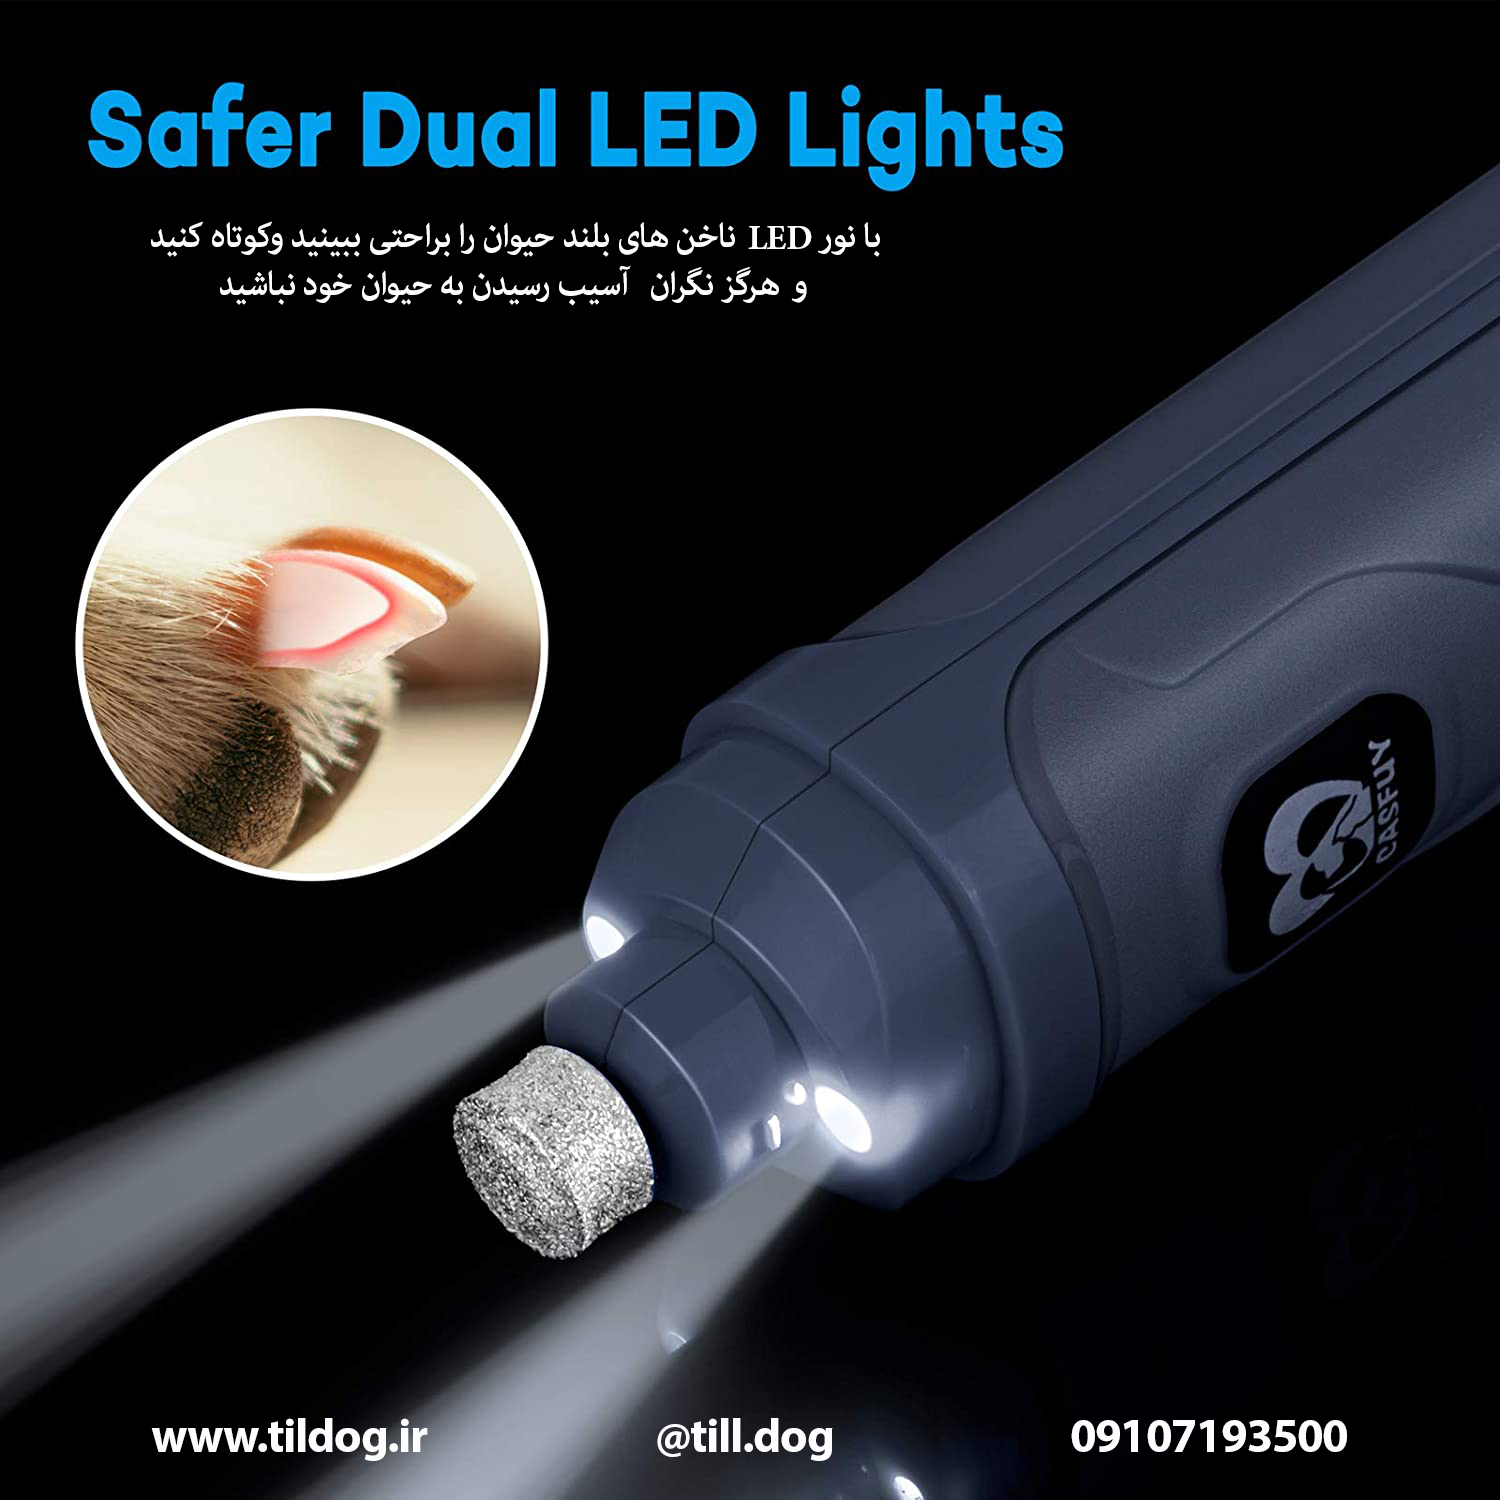 2 چراغ  LED که با روشنی بیشتری نسبت به سایر محصولات مشابه  LED معمولی می درخشد